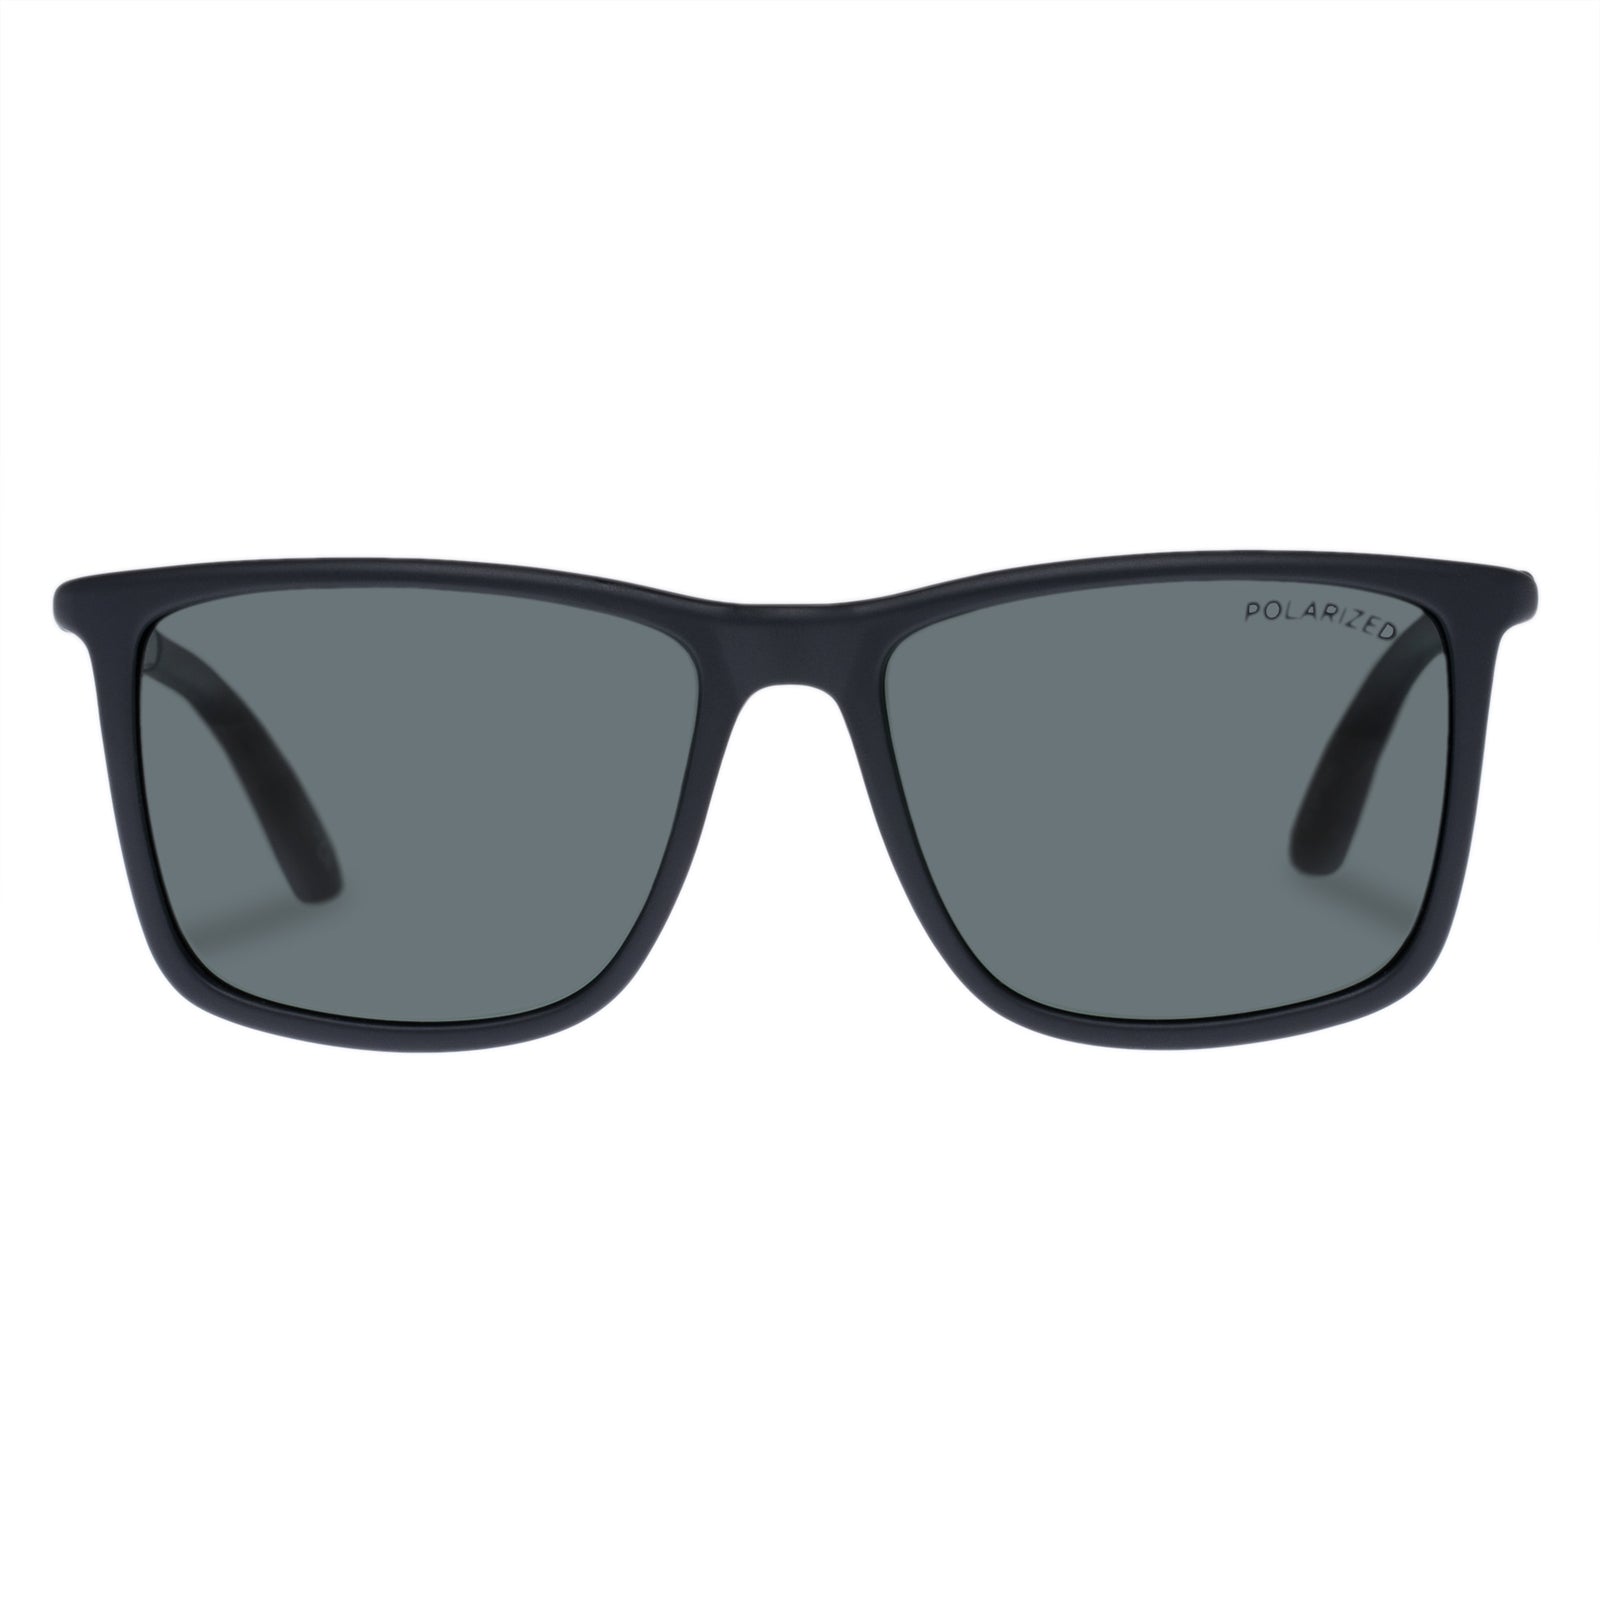 Le Specs Sunglasses Tweedledum Matte Black